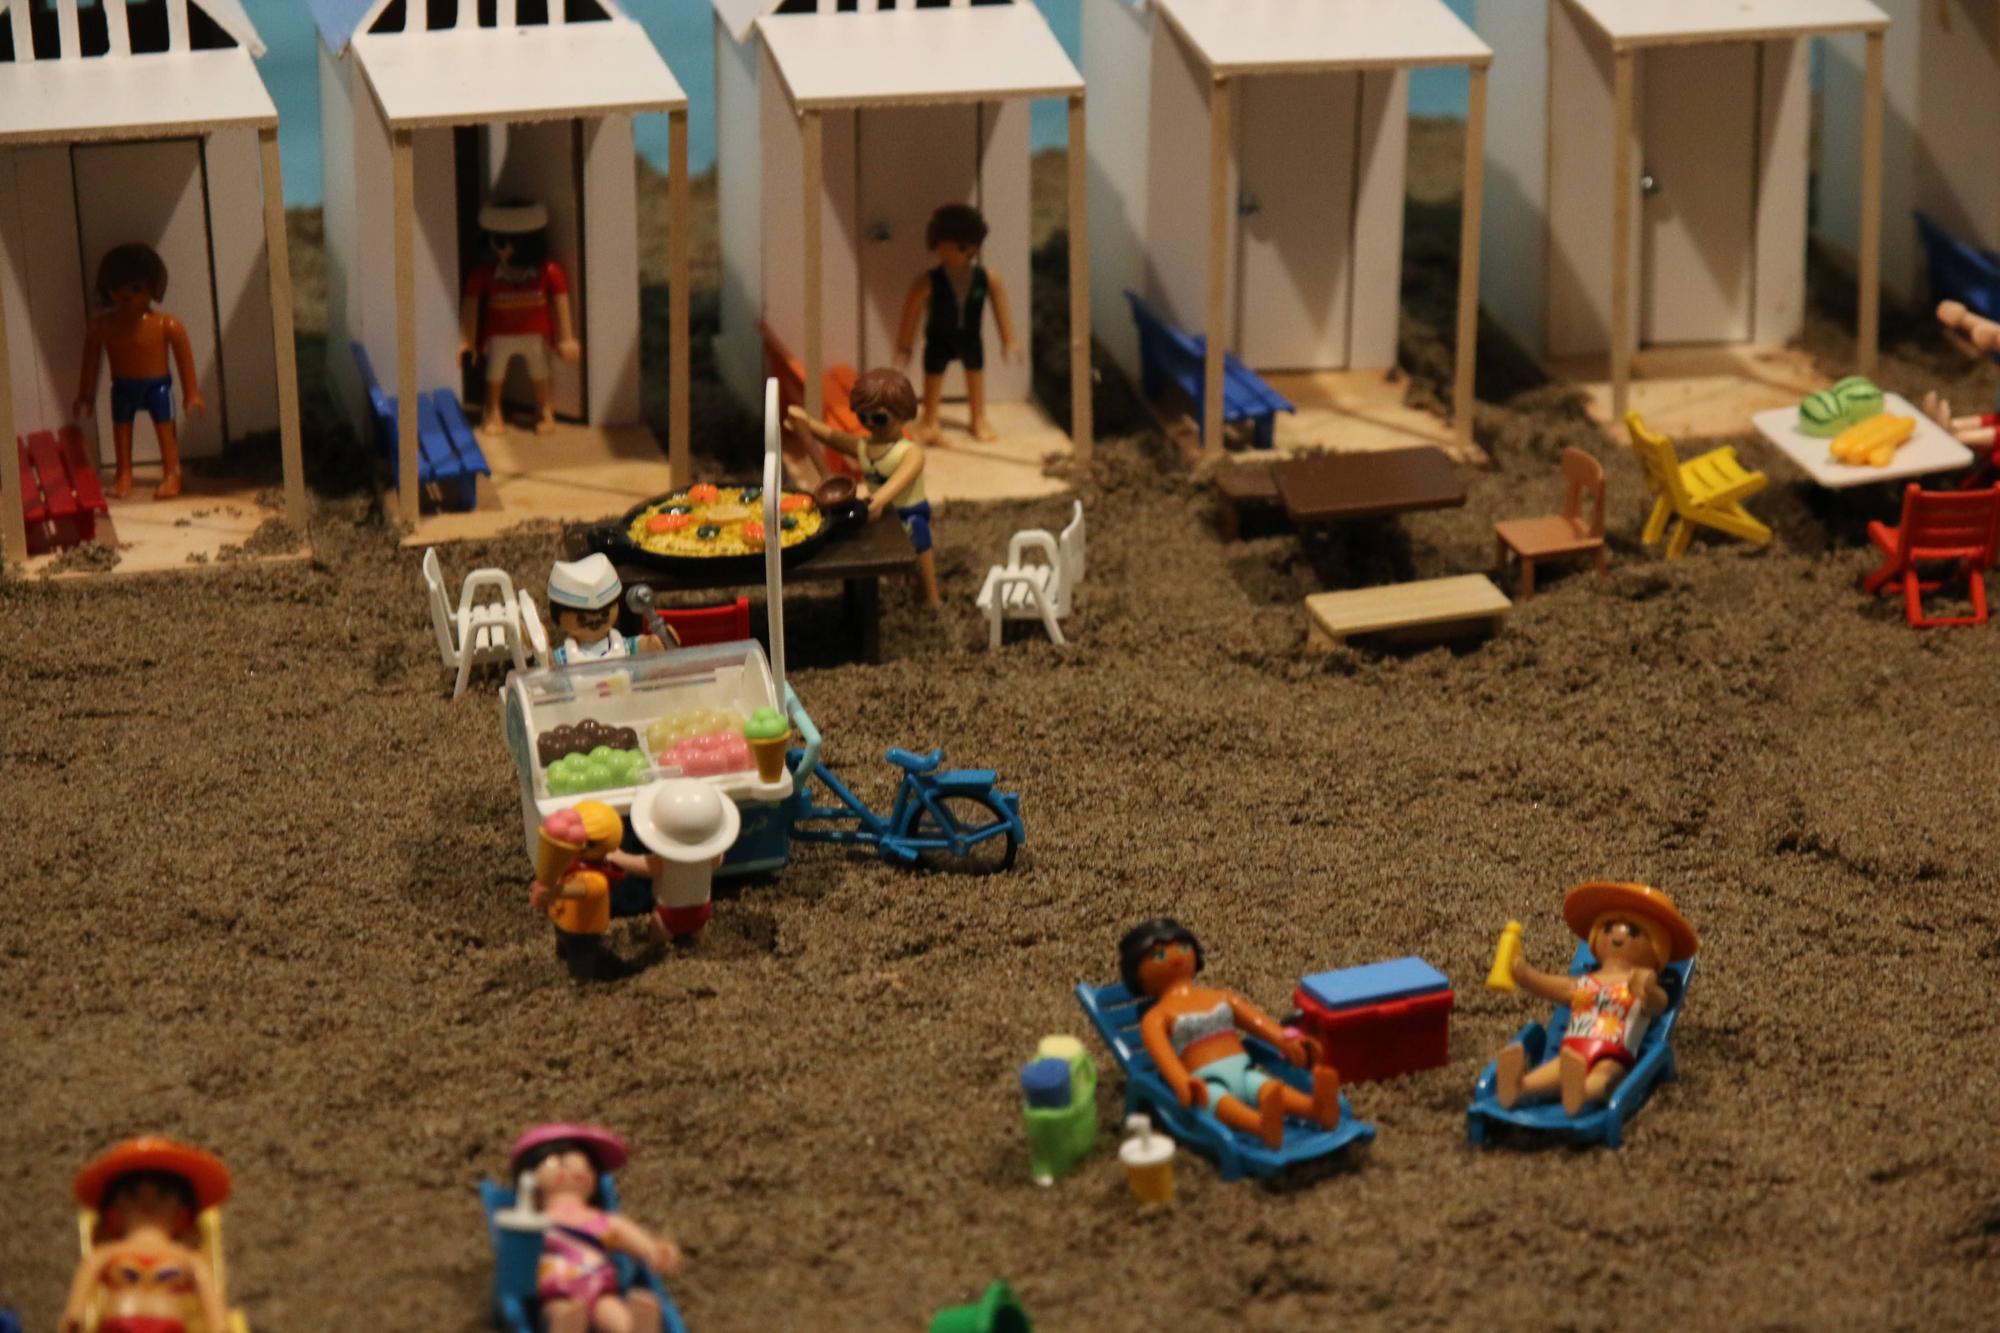 Una muestra de cómo es la macroexposición de playmobils en Burriana